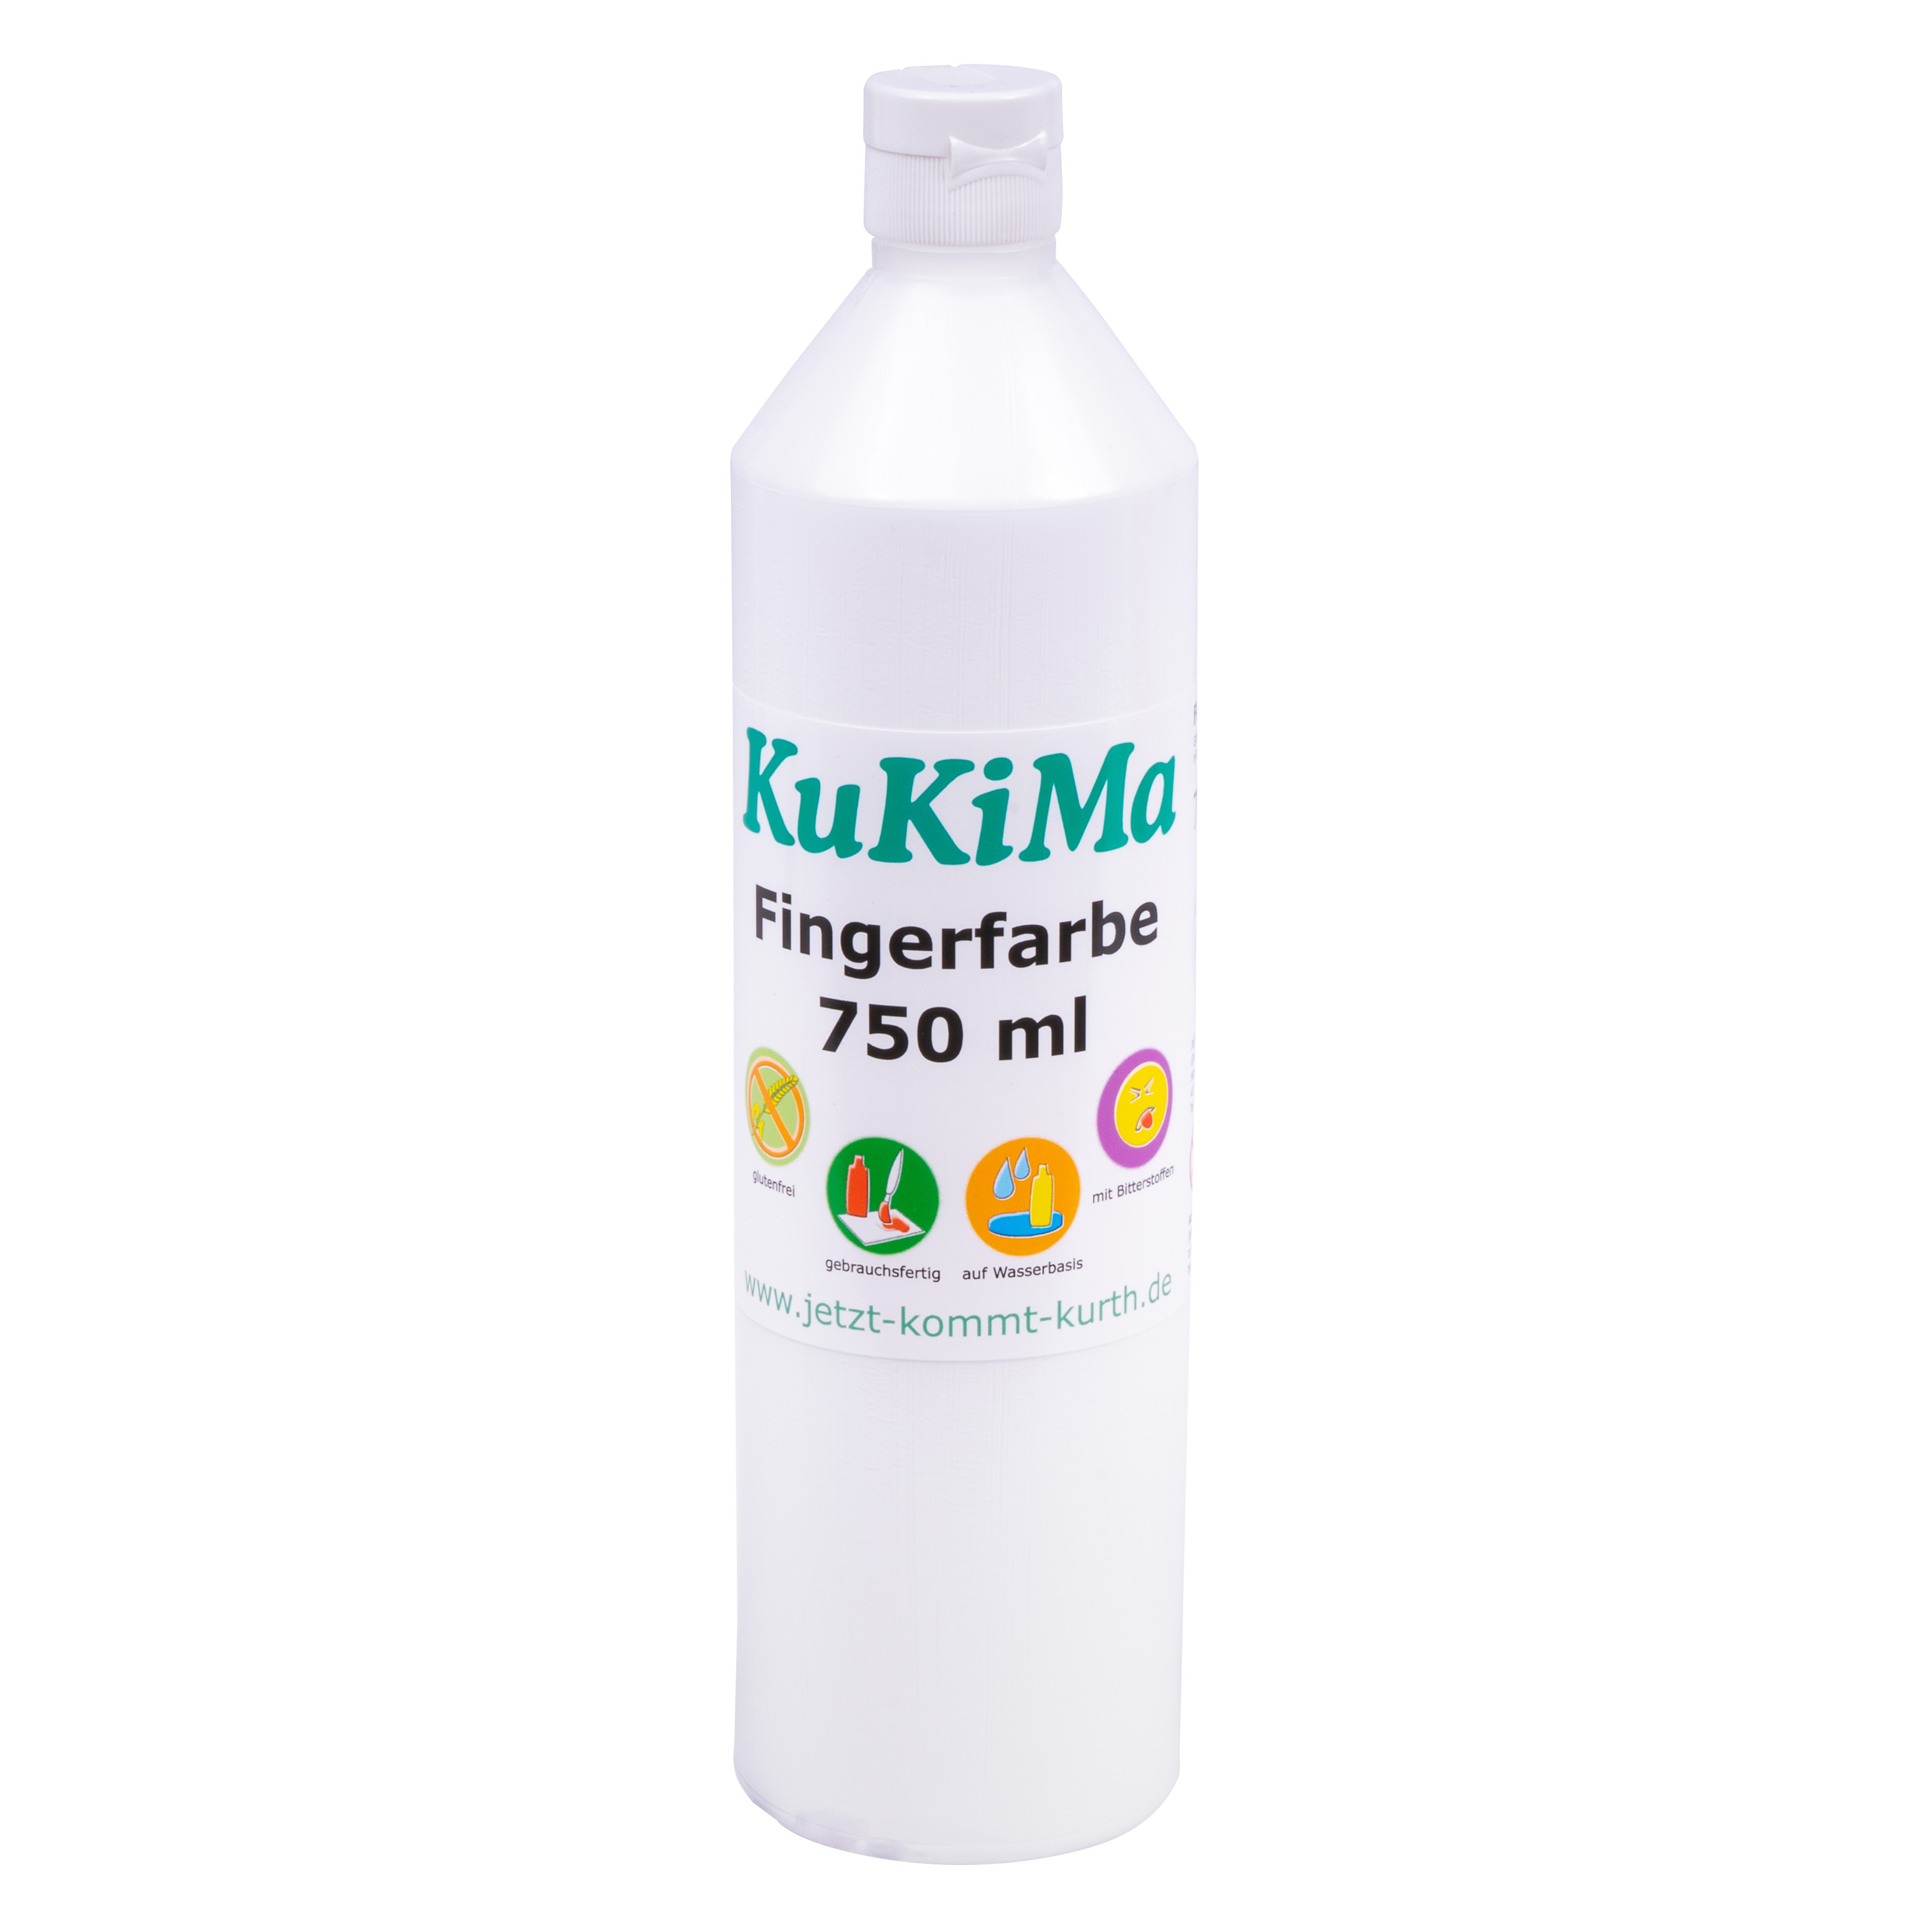 KuKiMa Fingerfarbe 750 ml, weiß